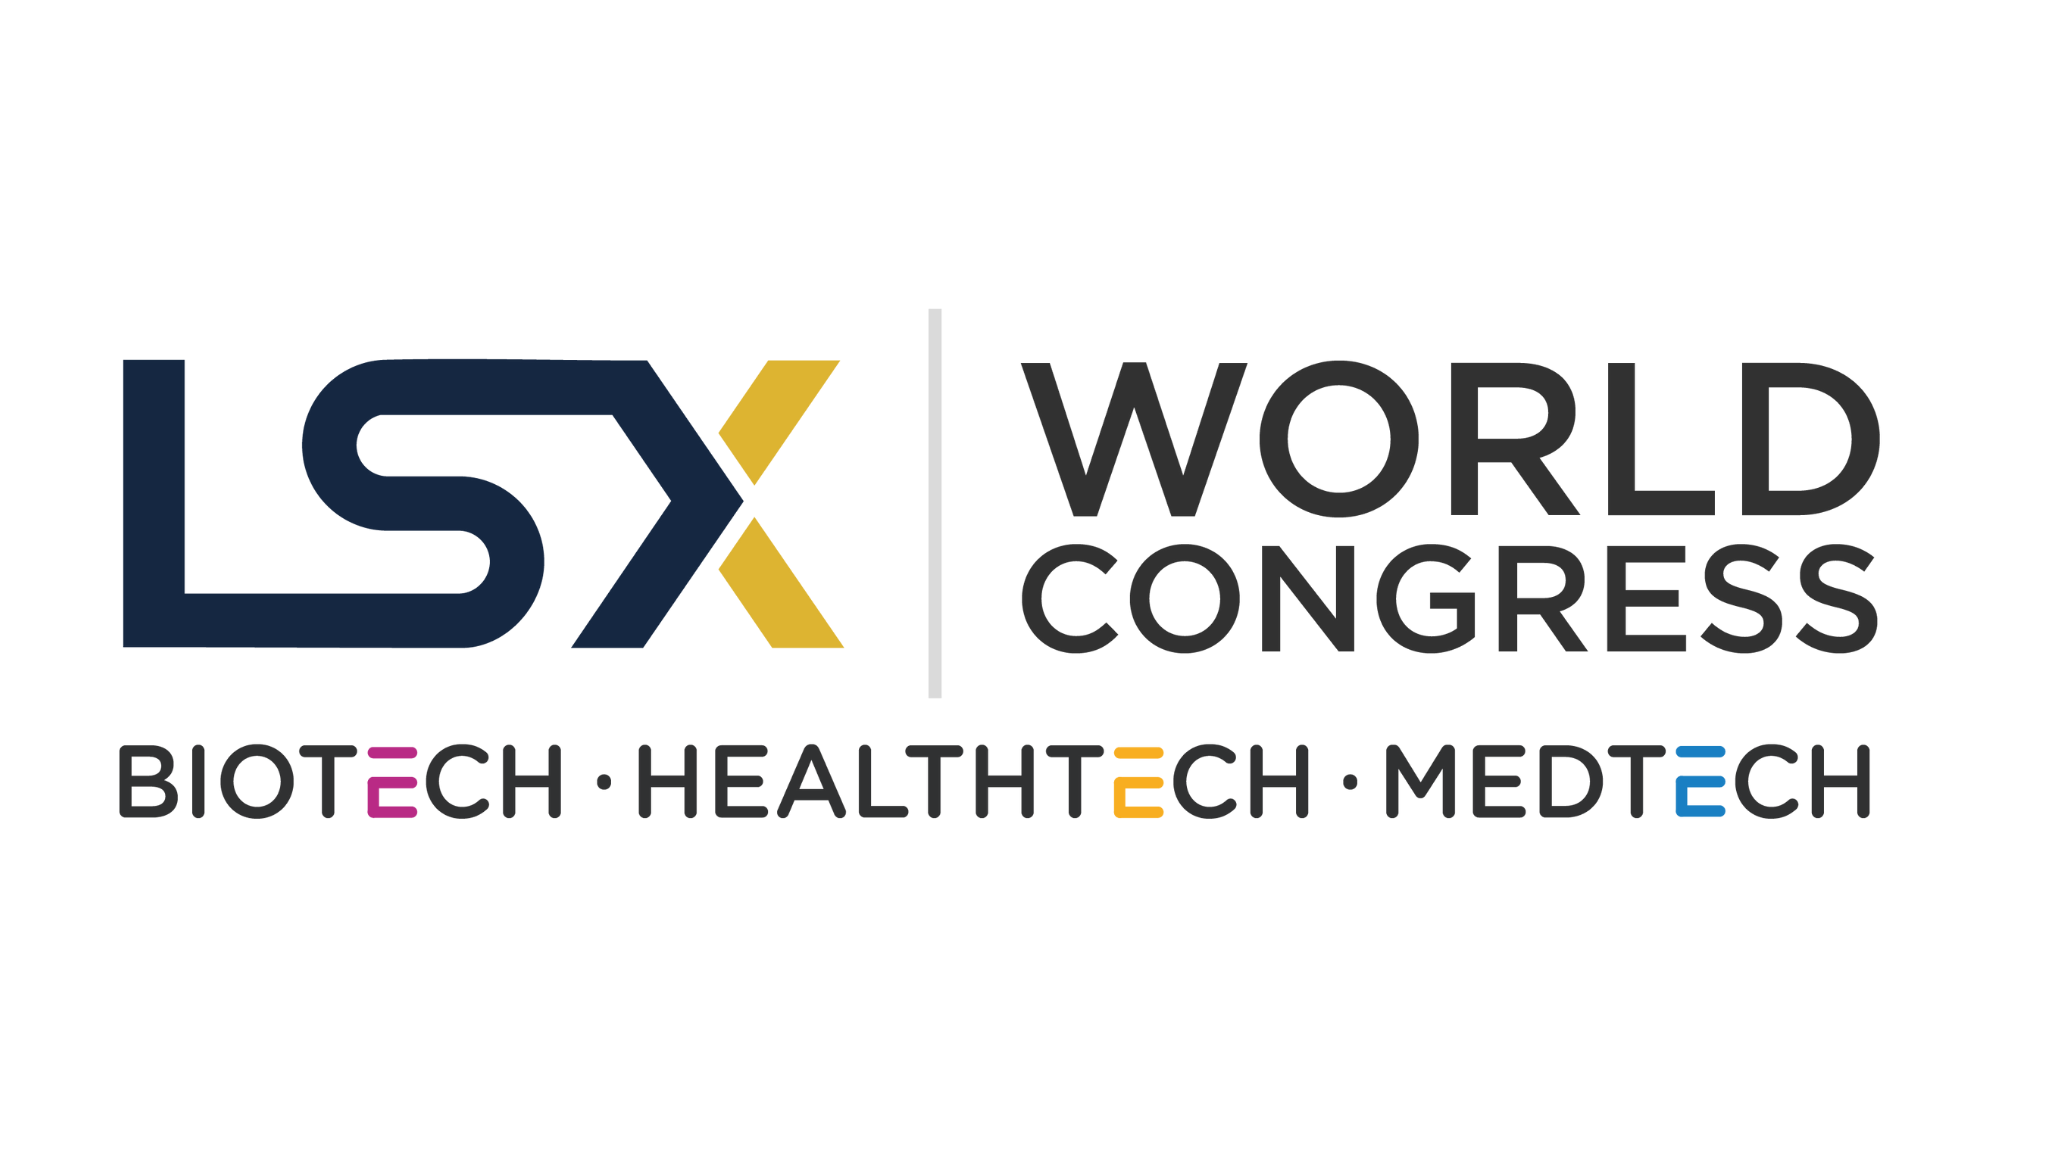 LSX World Congress